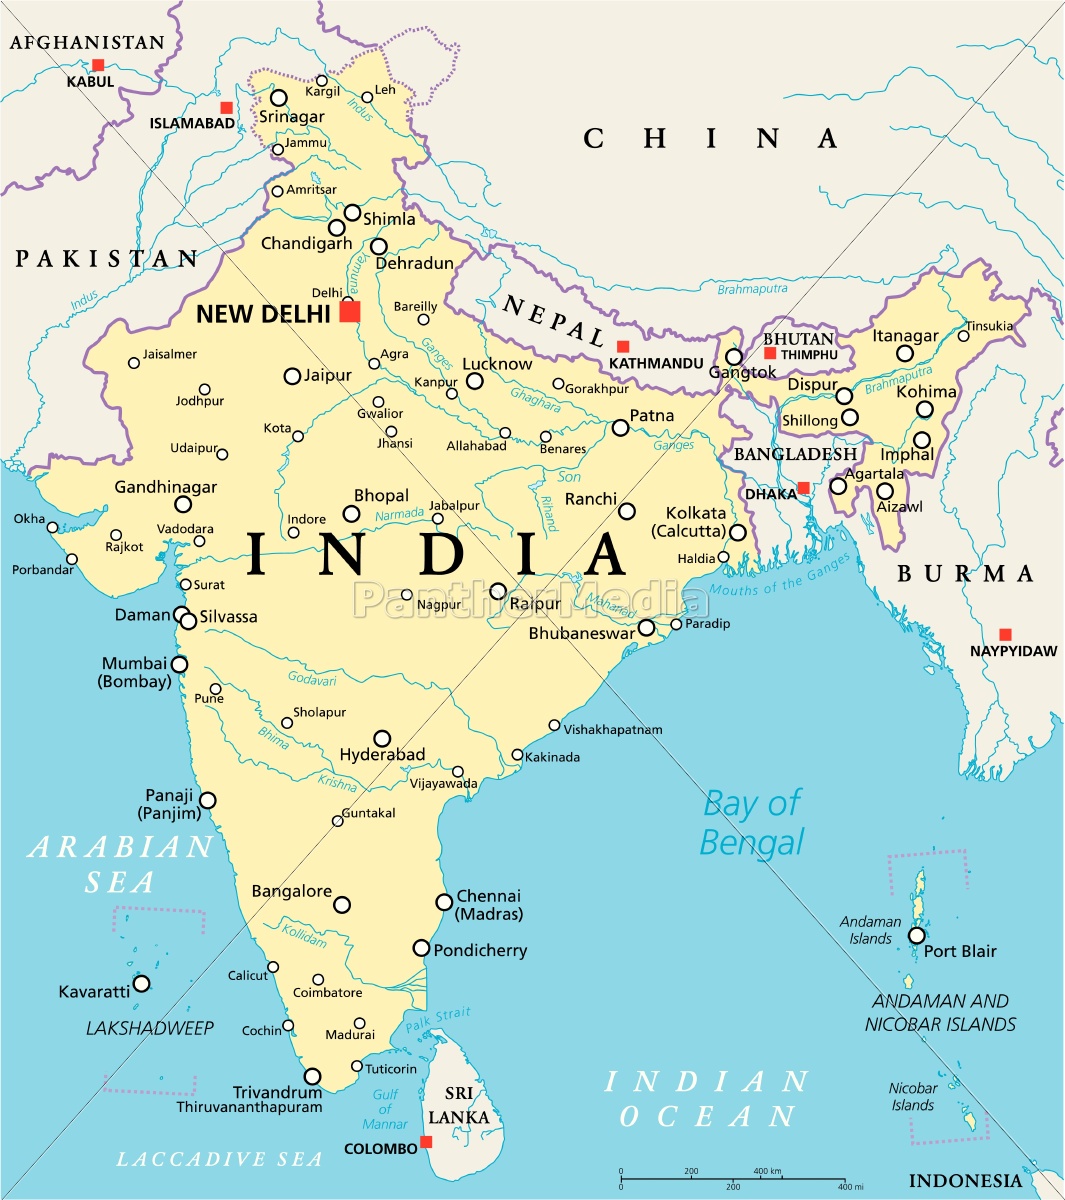 Mapa político da Índia - Stockphoto #14599689 | Banco de Imagens